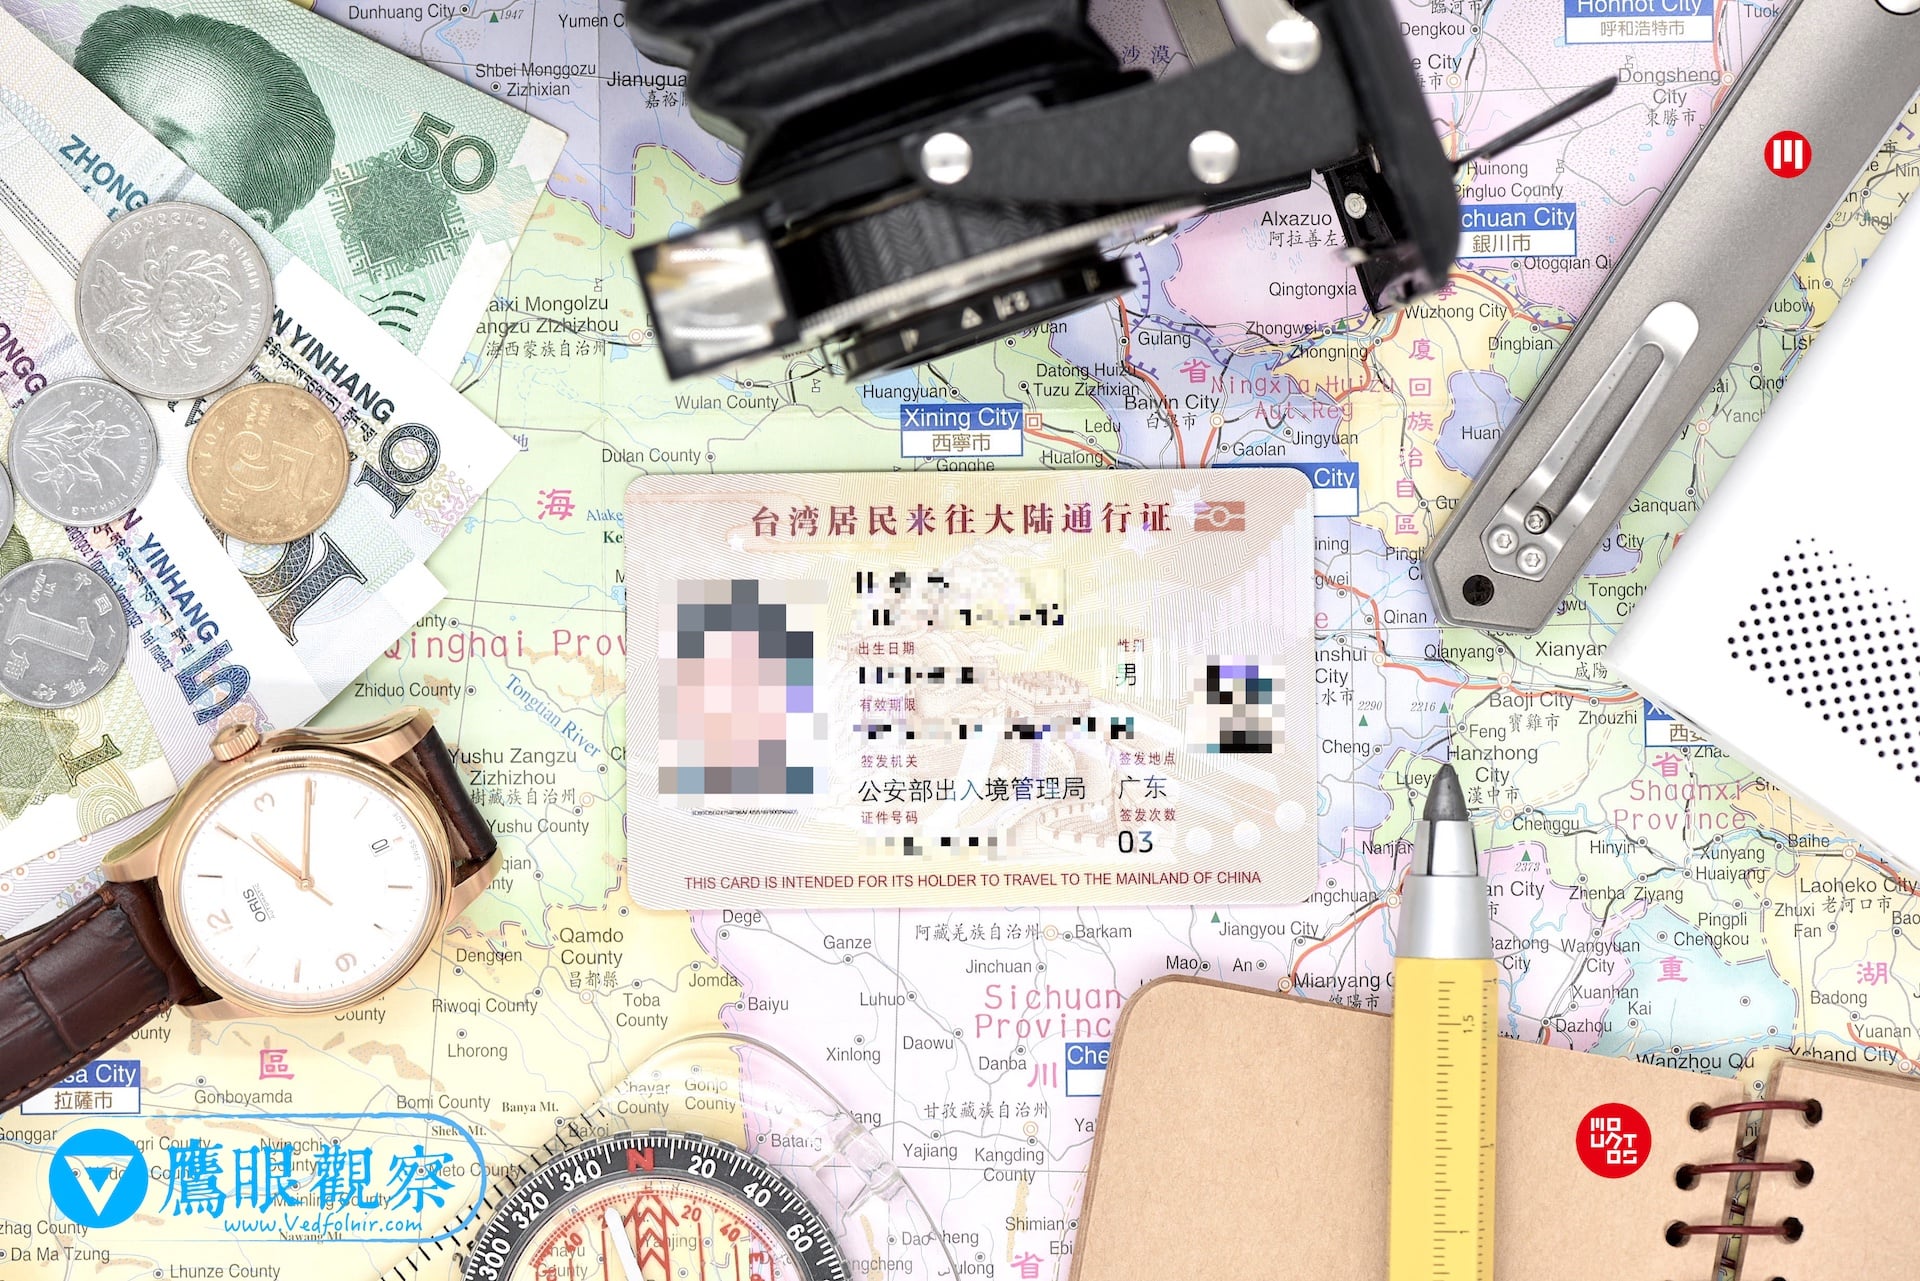 中華民國國民自4月10日起持台胞證赴澳門 Macau 旅行免簽證